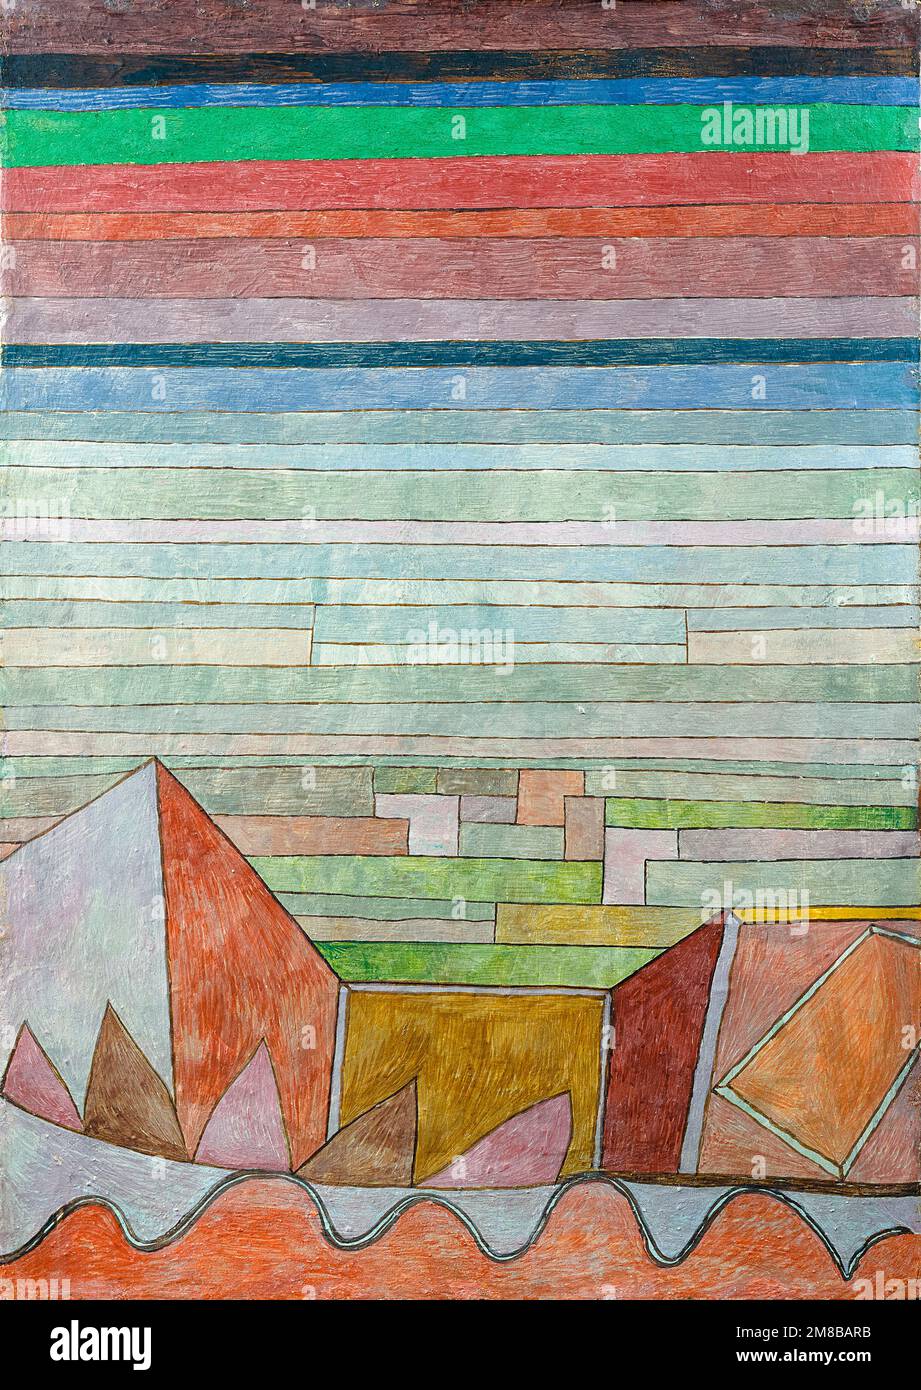 Paul Klee, vue dans le pays fertile, peinture abstraite dans l'huile sur carton, 1932 Banque D'Images